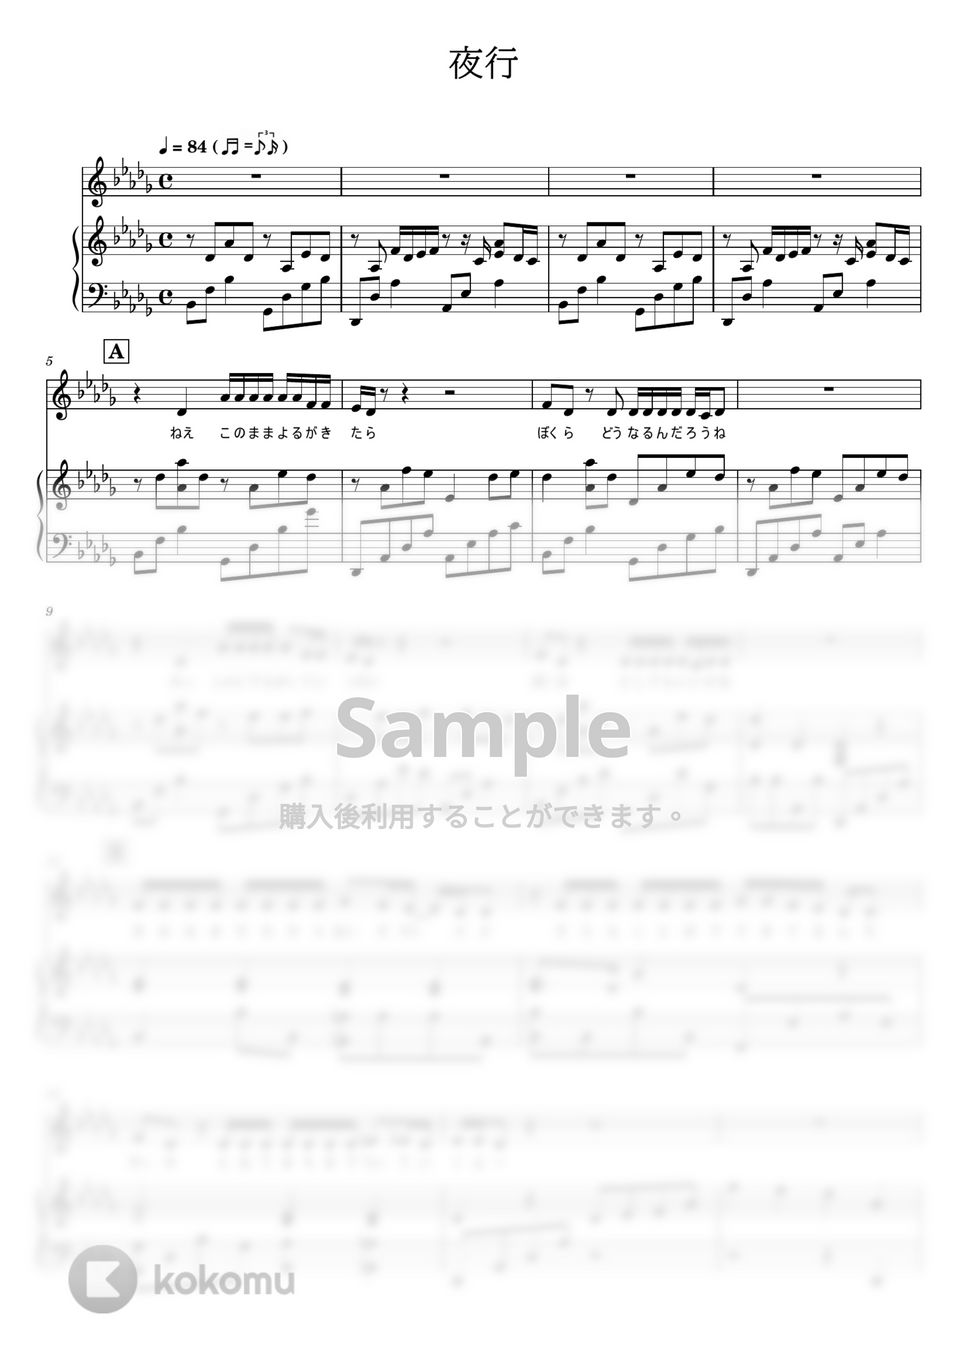 ヨルシカ - 夜行 (ピアノ弾き語り) by otyazuke